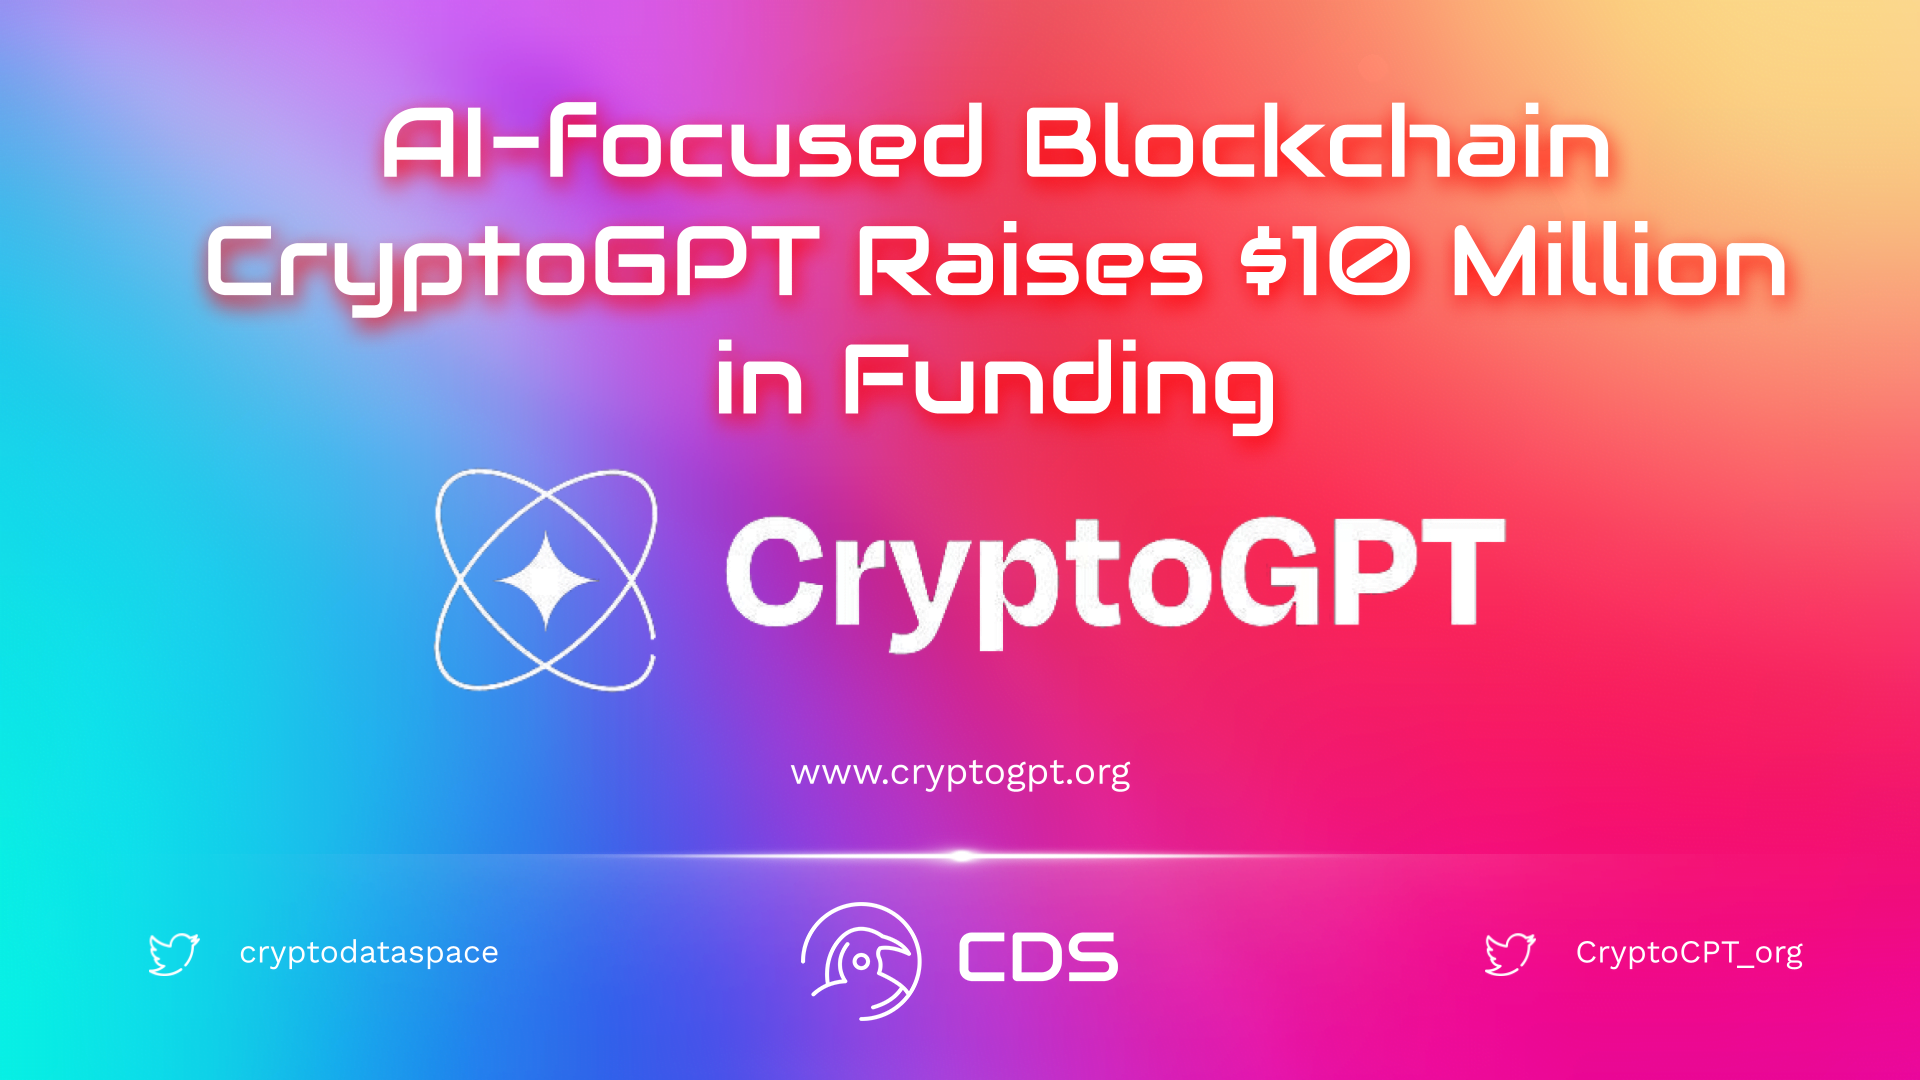 AI-focused Blockchain CryptoGPT Raises $10 Million in Funding